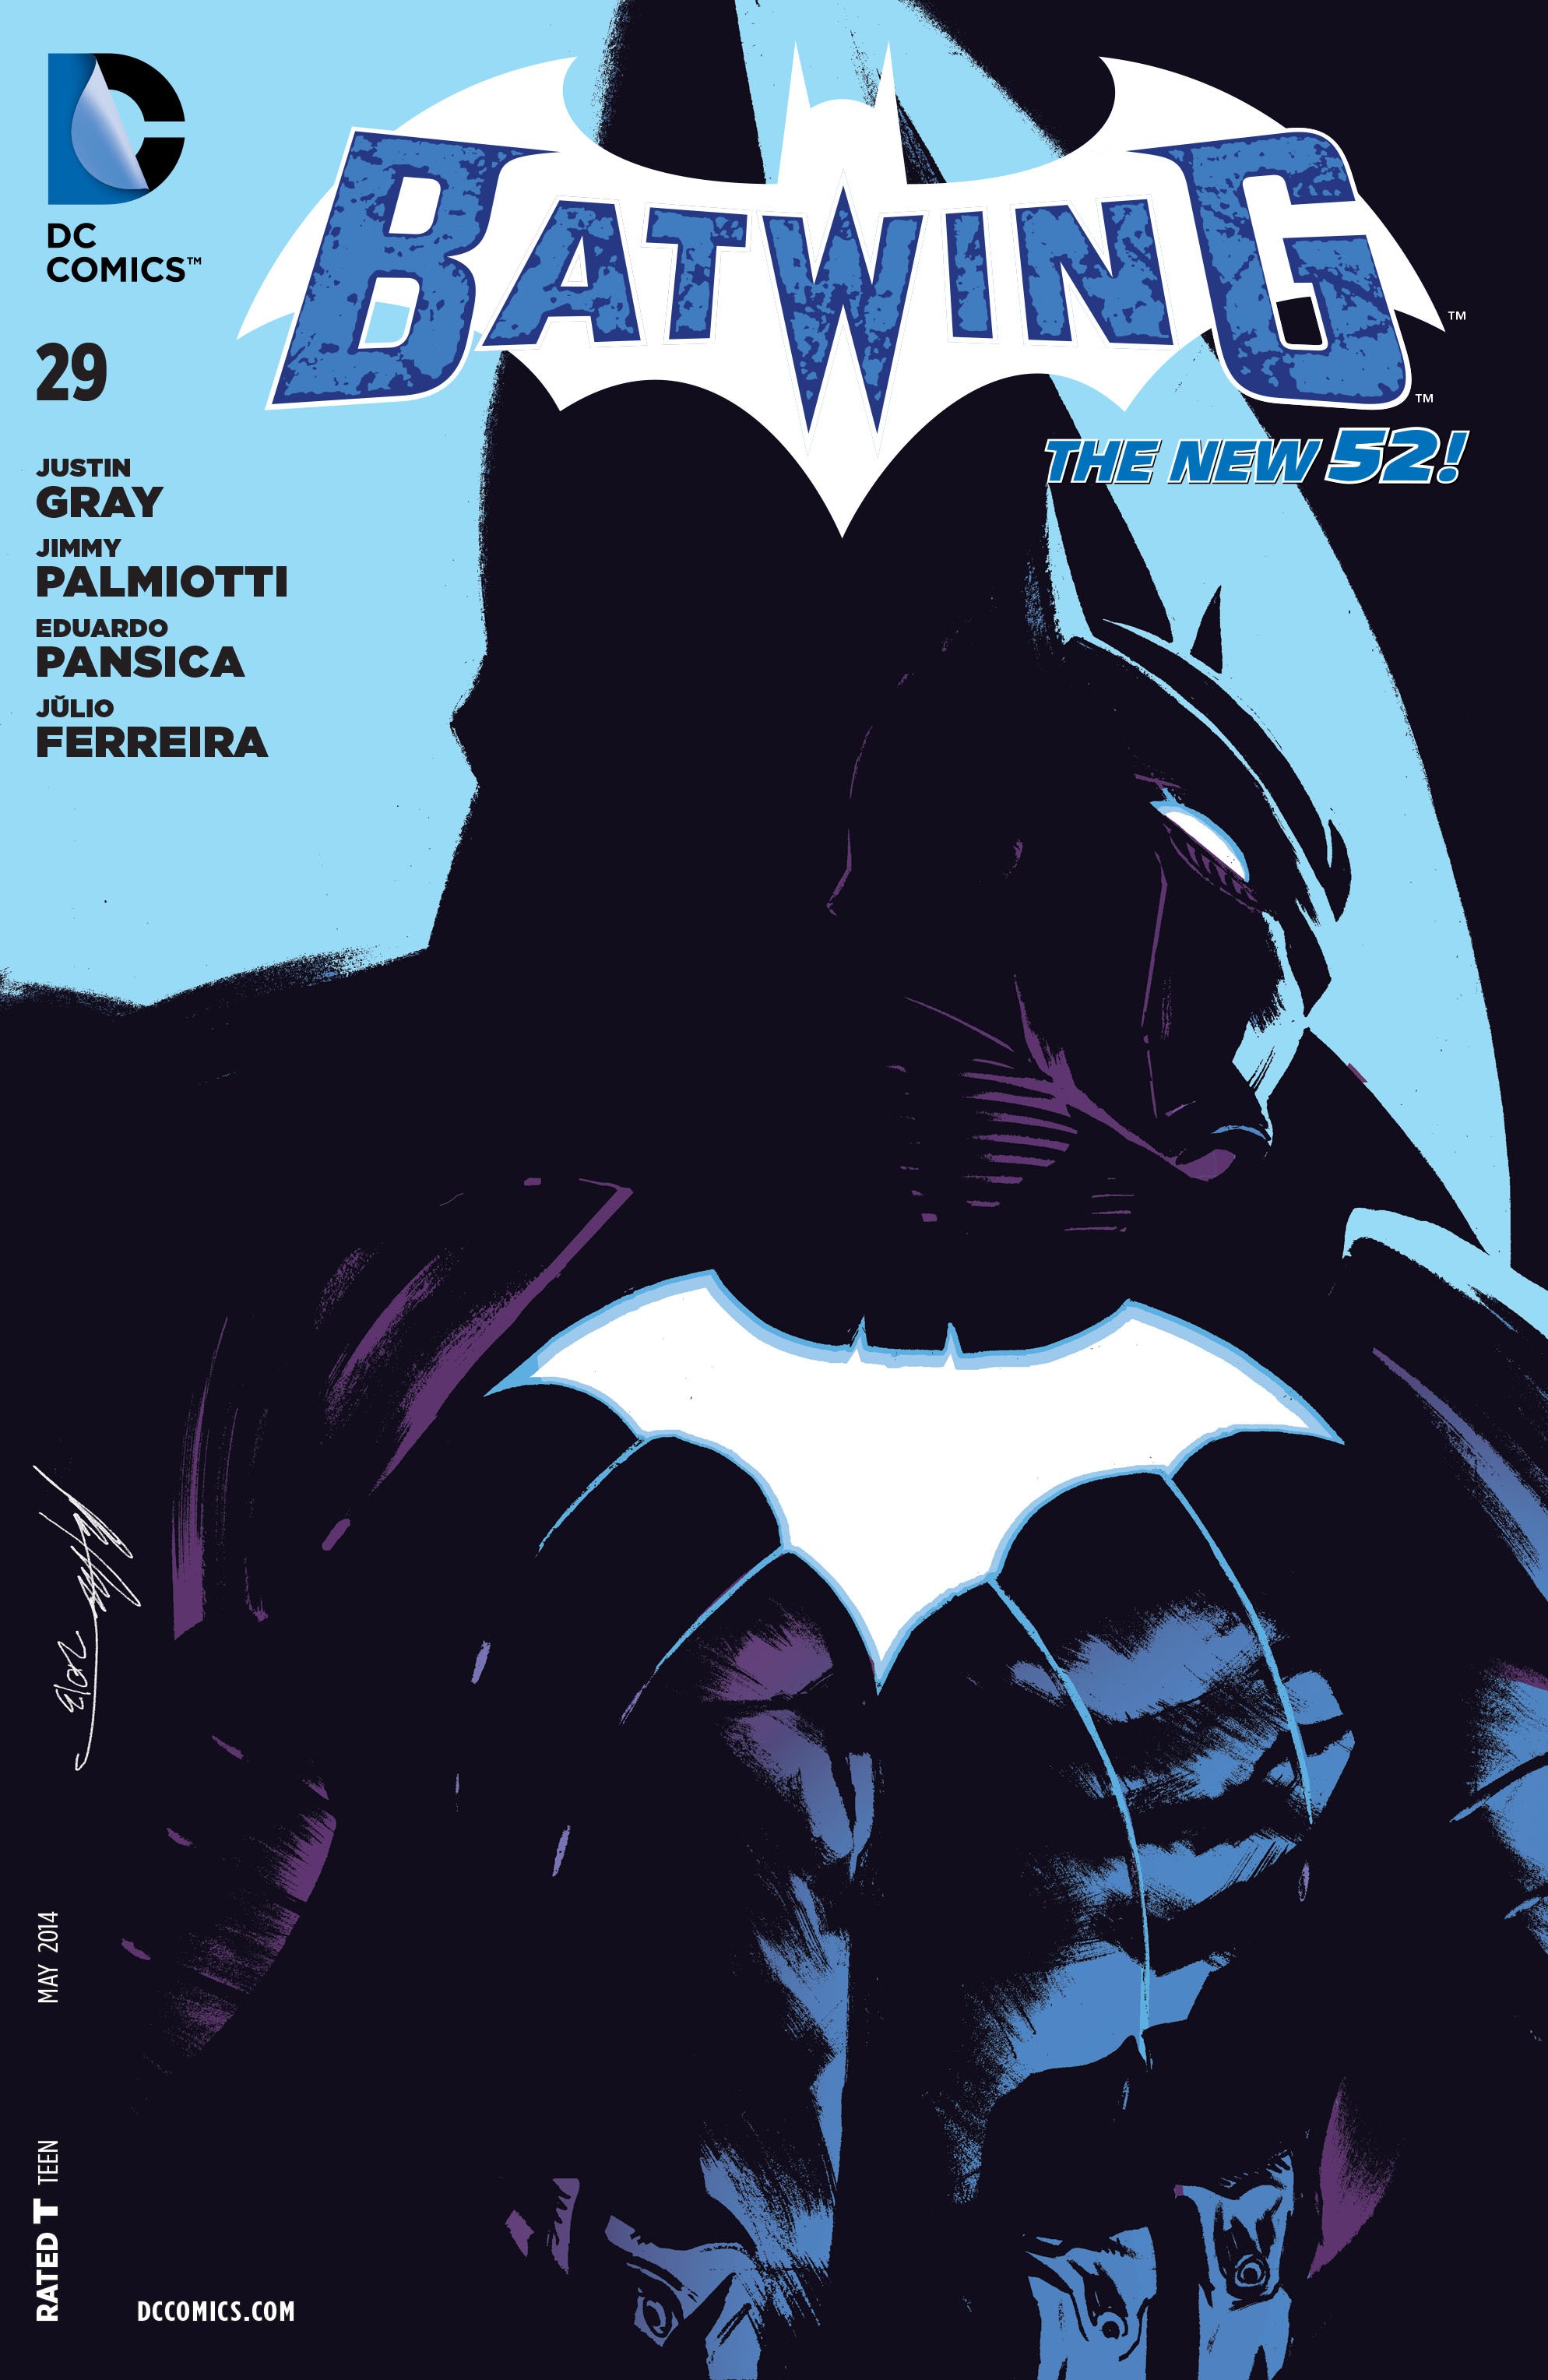 Batwing Vol. 1 #29